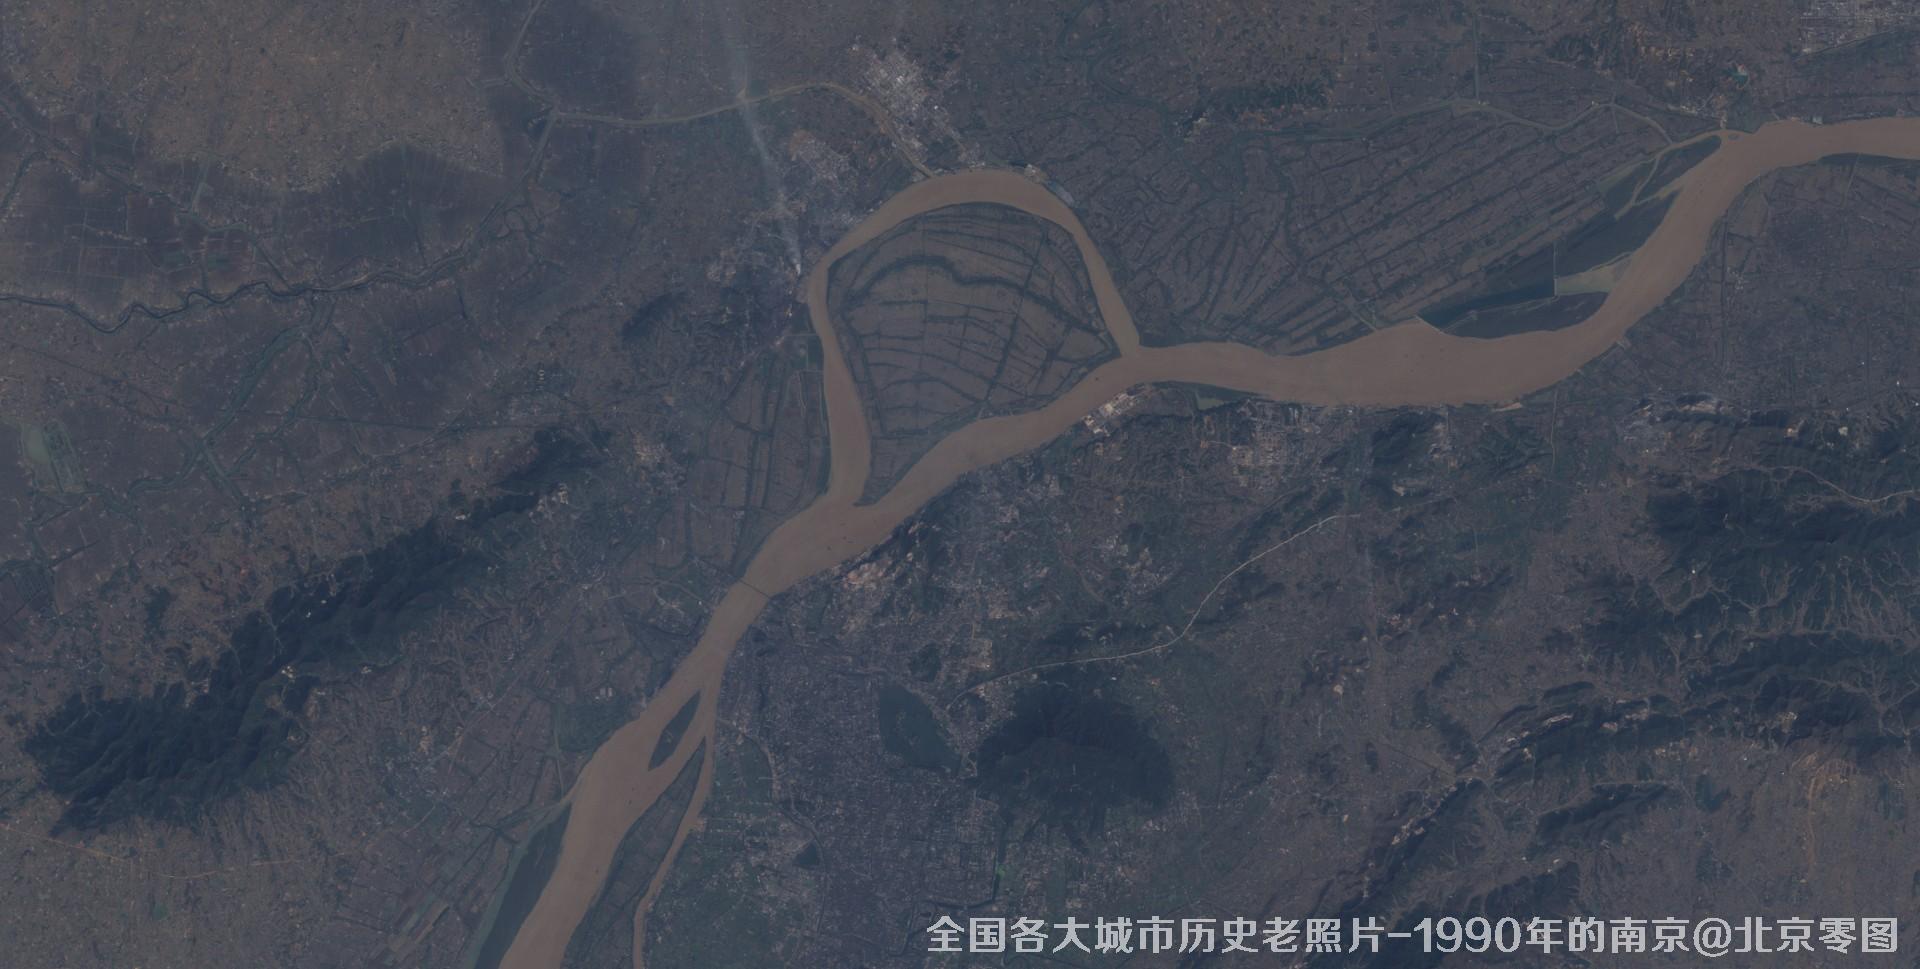 美国Landsat卫星拍摄的1990年的江苏省京市历史卫星影像图